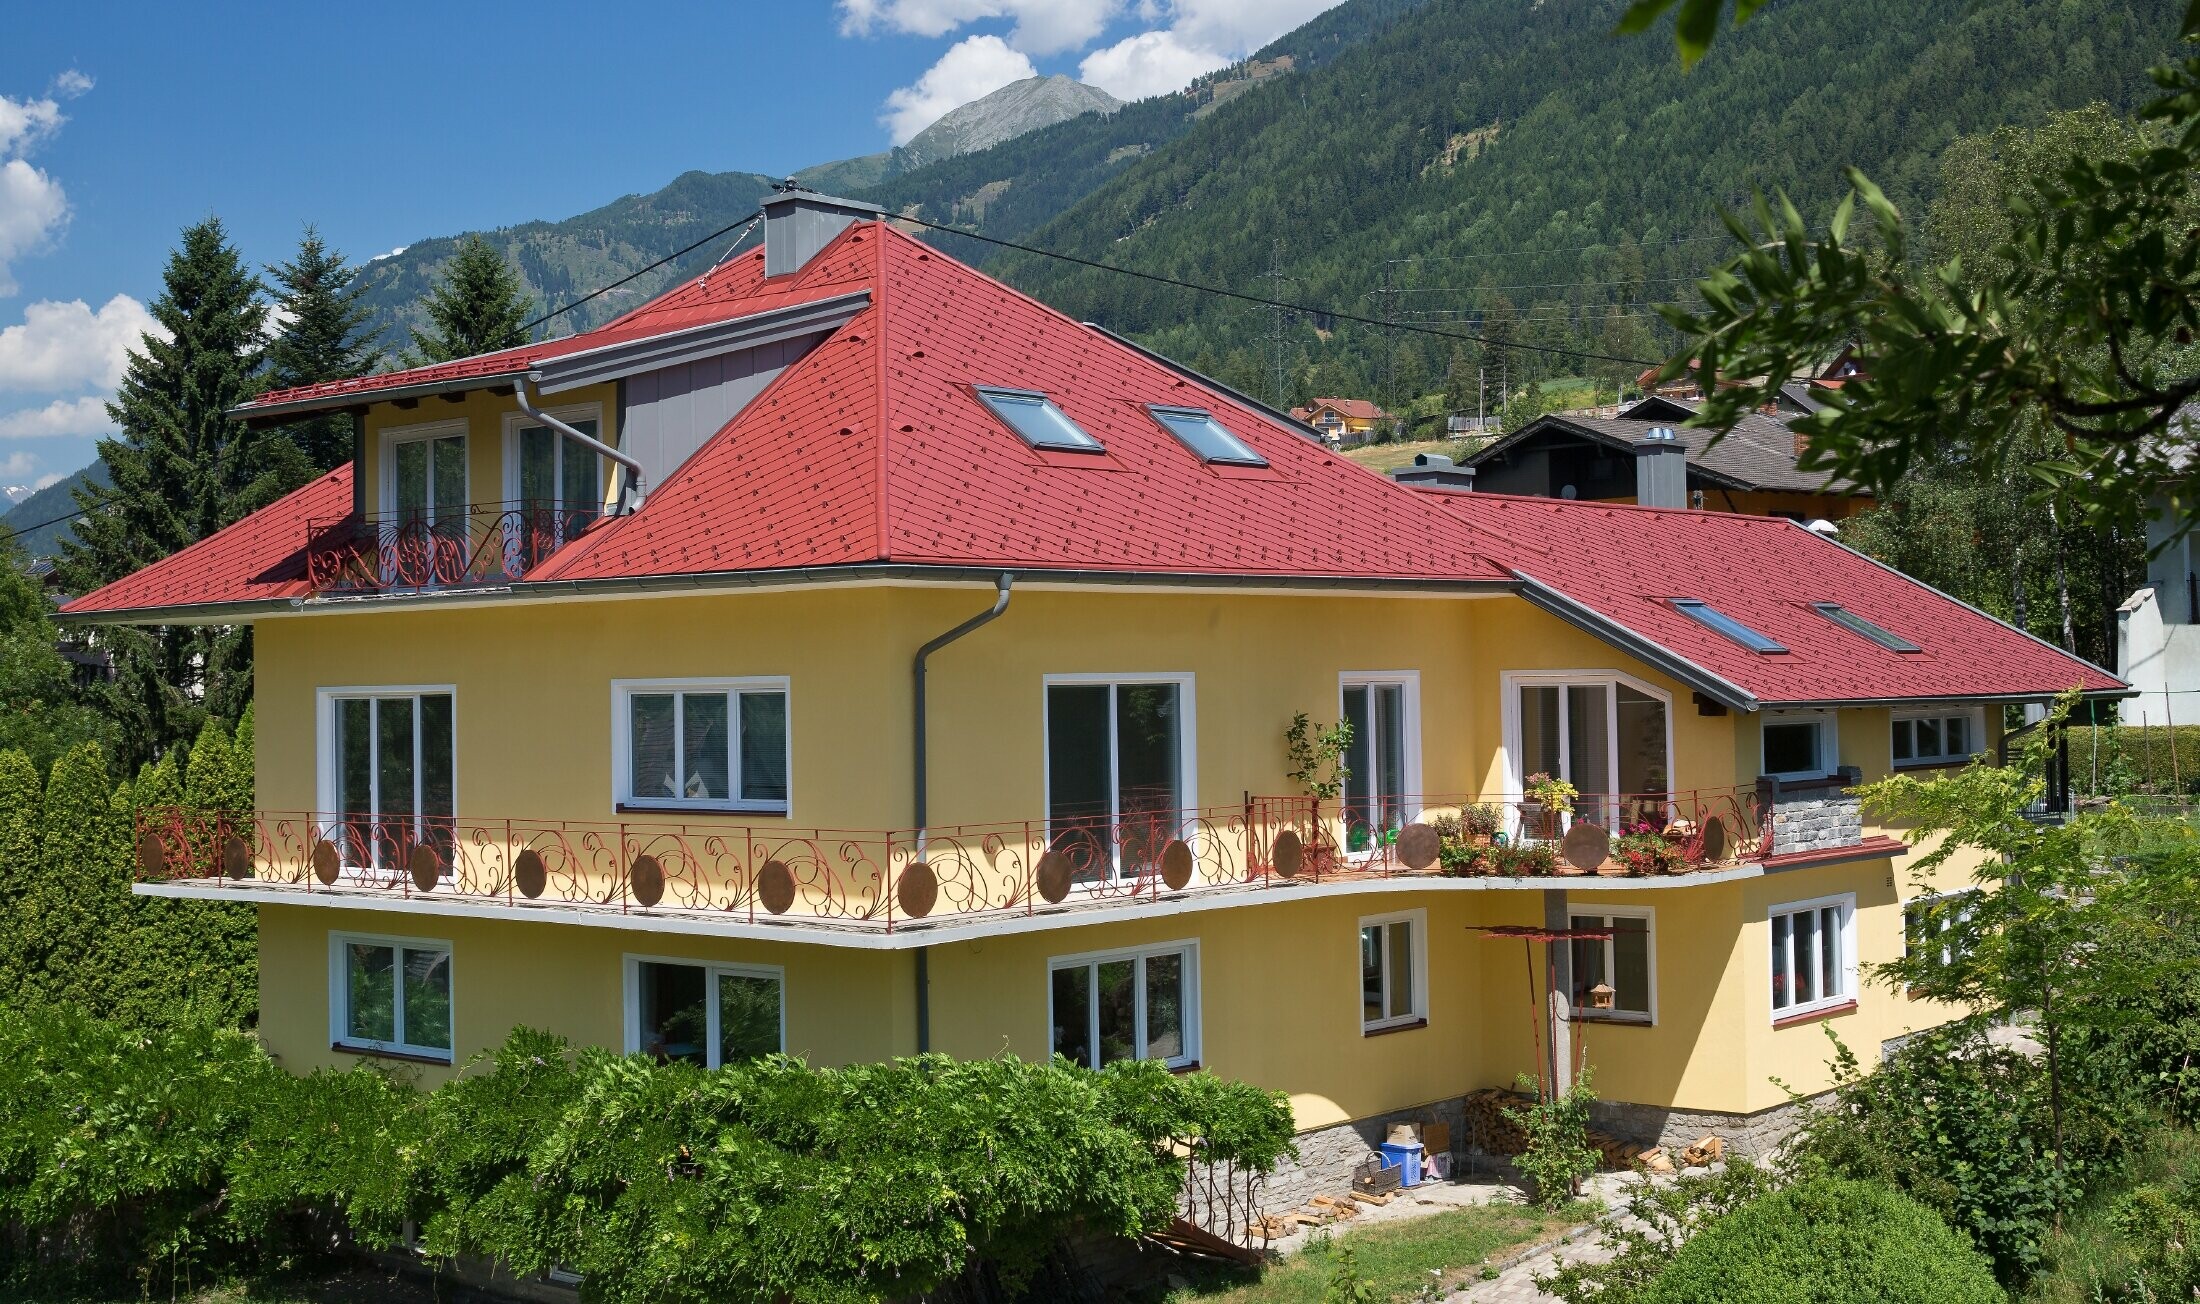 klasična obiteljska kuća s četverostrešnim krovom, pokrivena krovnim rombovima u oksid crvenoj boji.